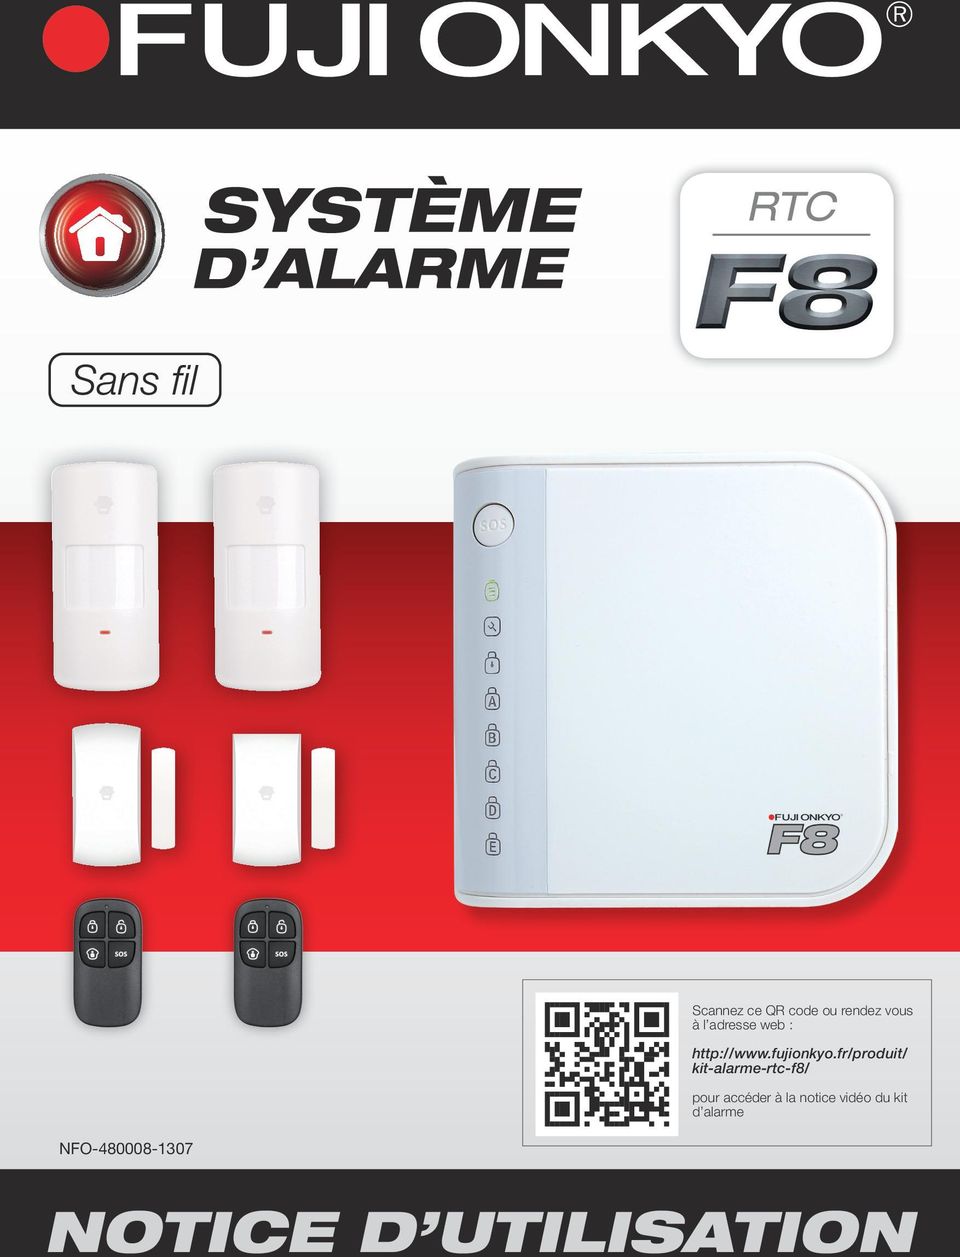 fr/produit/ kit-alarme-rtc-f8/ pour accéder à